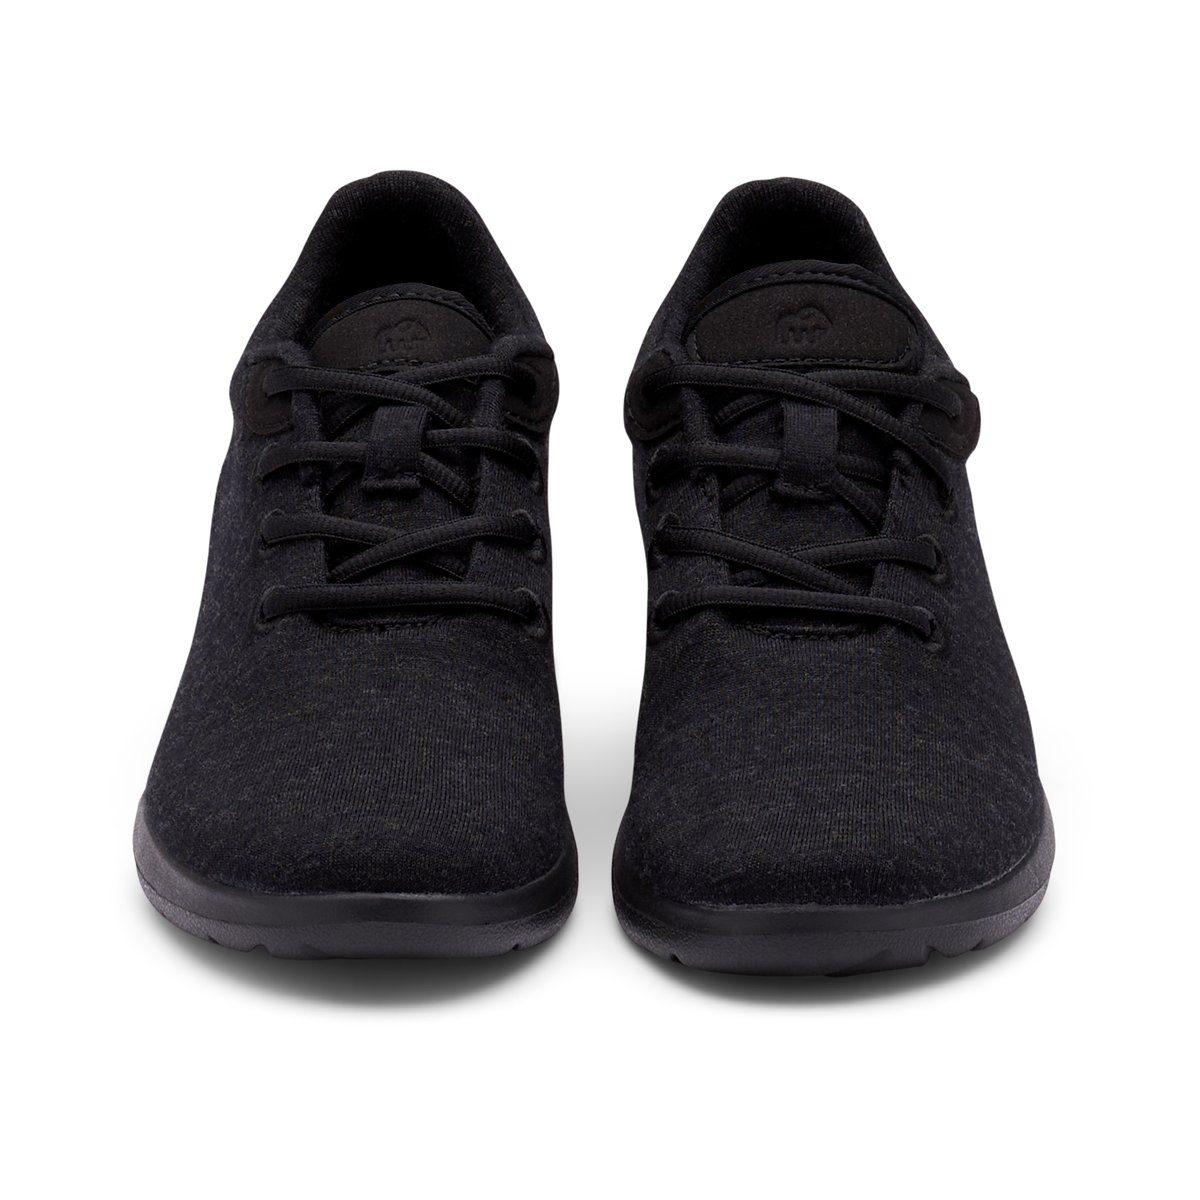 aus merinoshoes.de Bequeme Merinowolle Schuhe Sneaker schwarze merinos Up, Lace- weicher Sportschuhe atmungsaktive Damen -